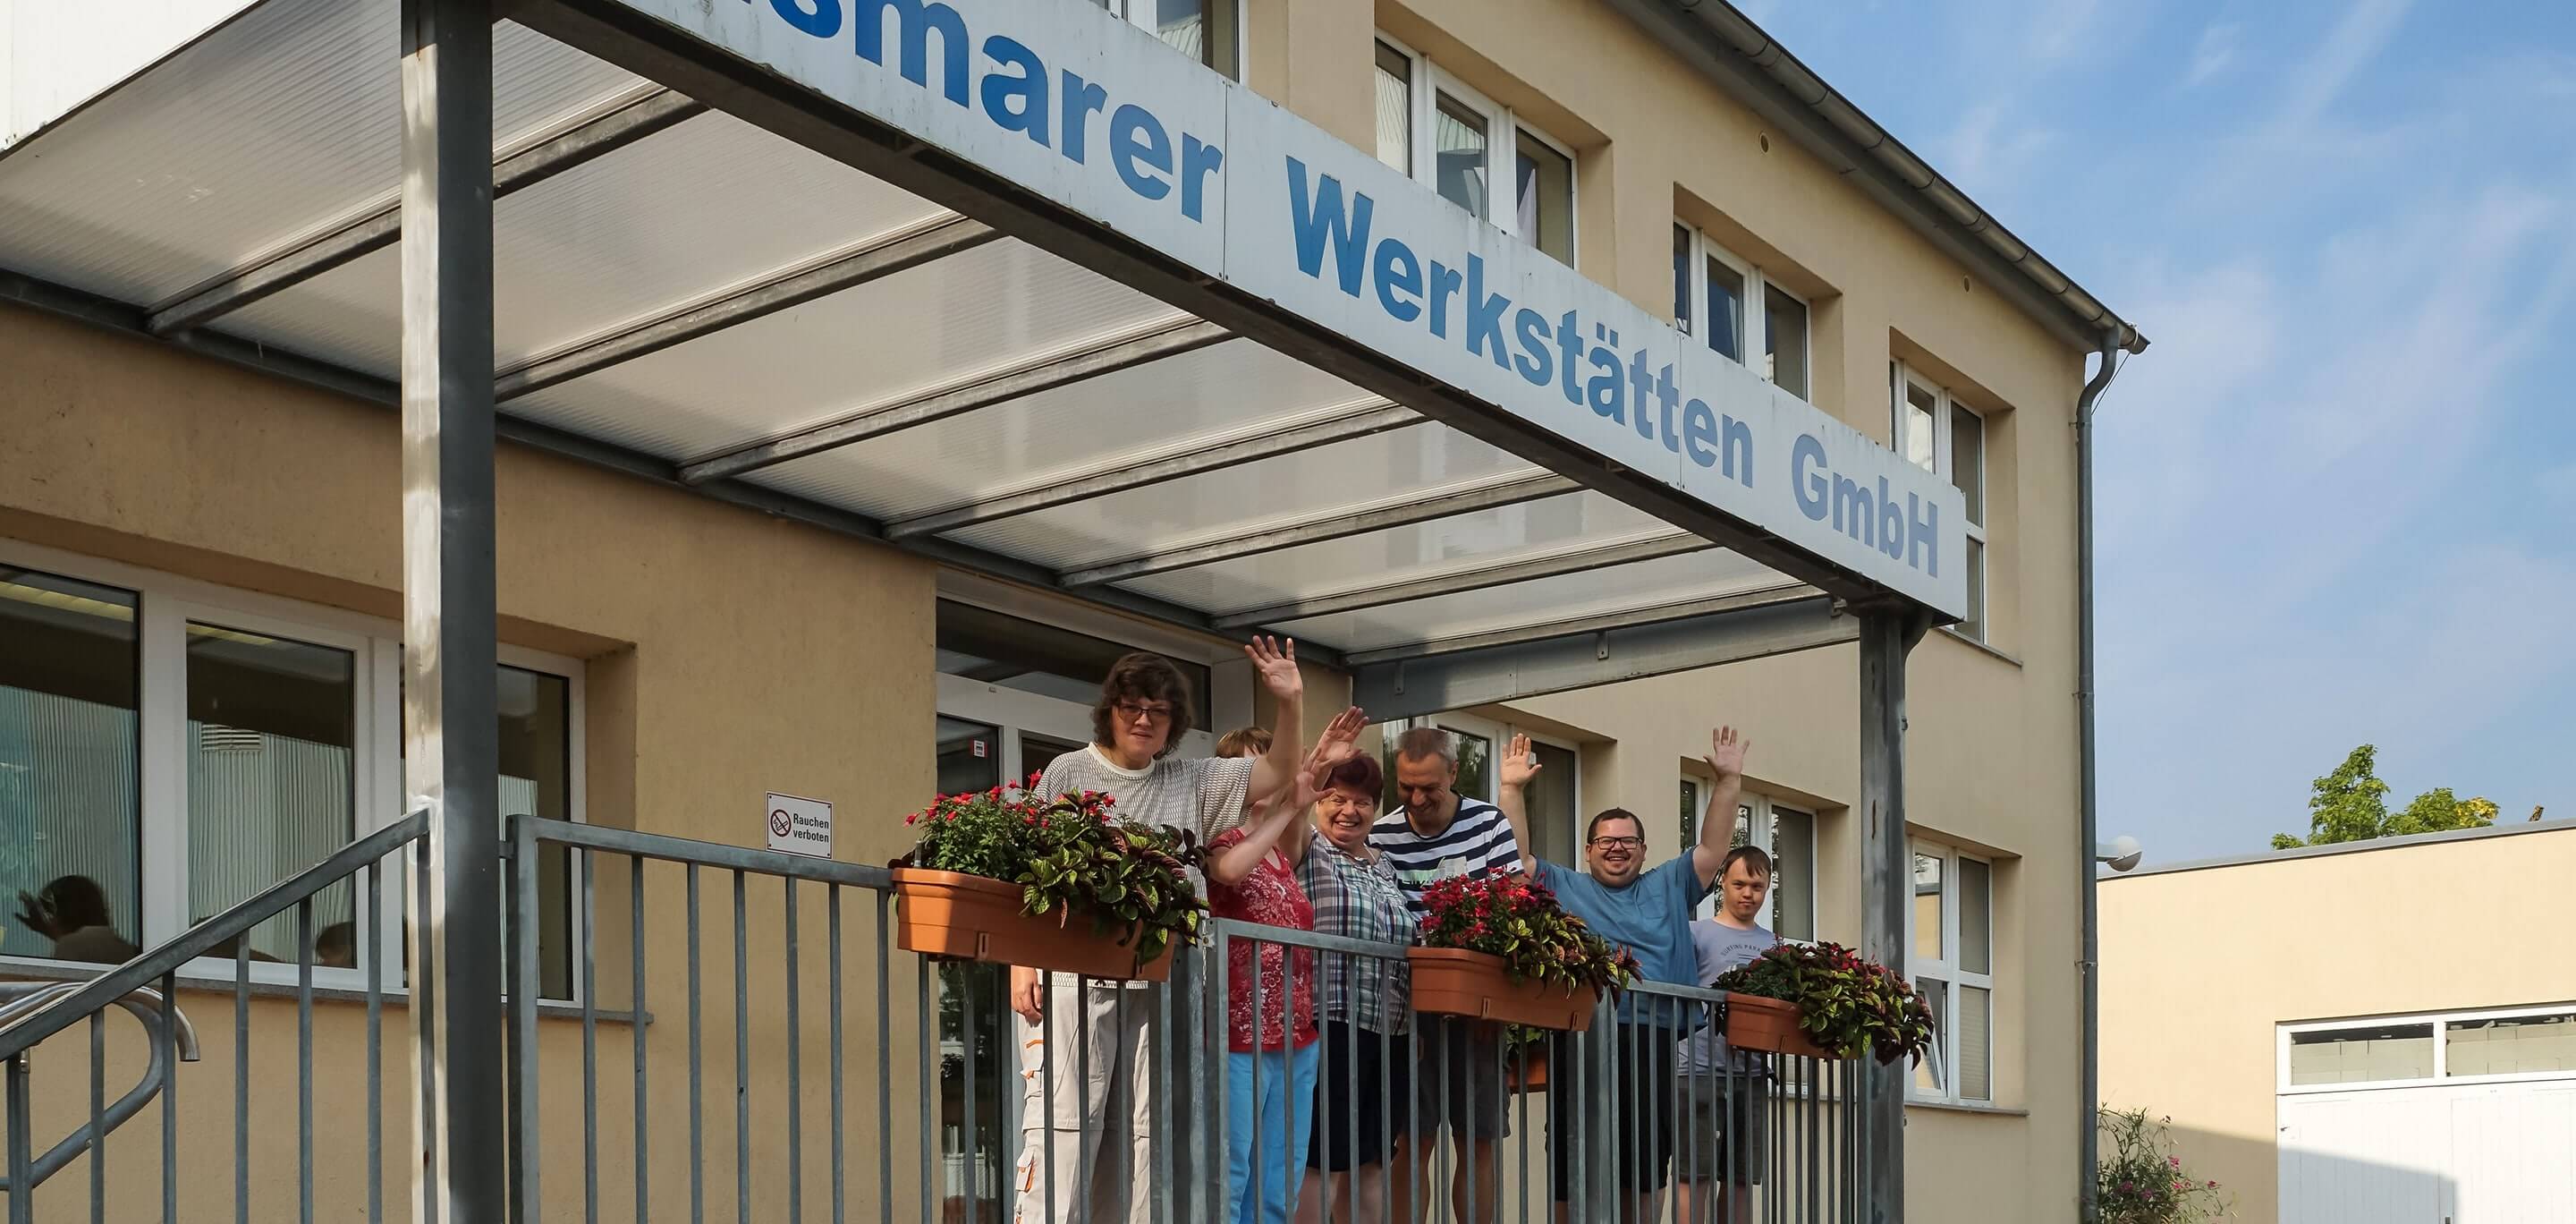 Winkende Menschen stehen am Eingang der Wismarer Werkstätten GmbH